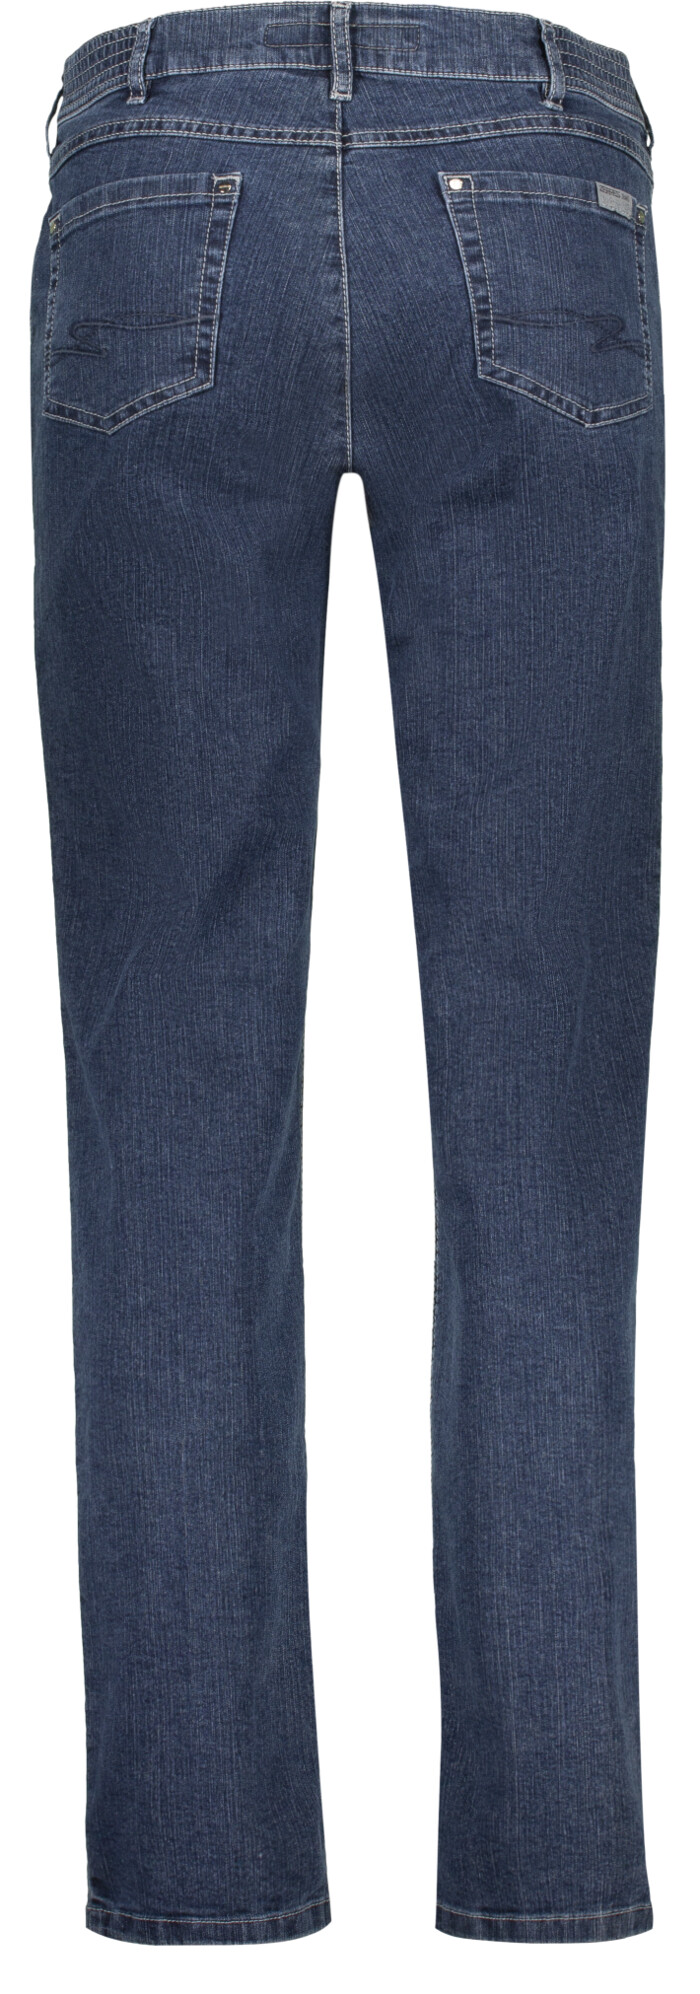 A Jeans model Greta 